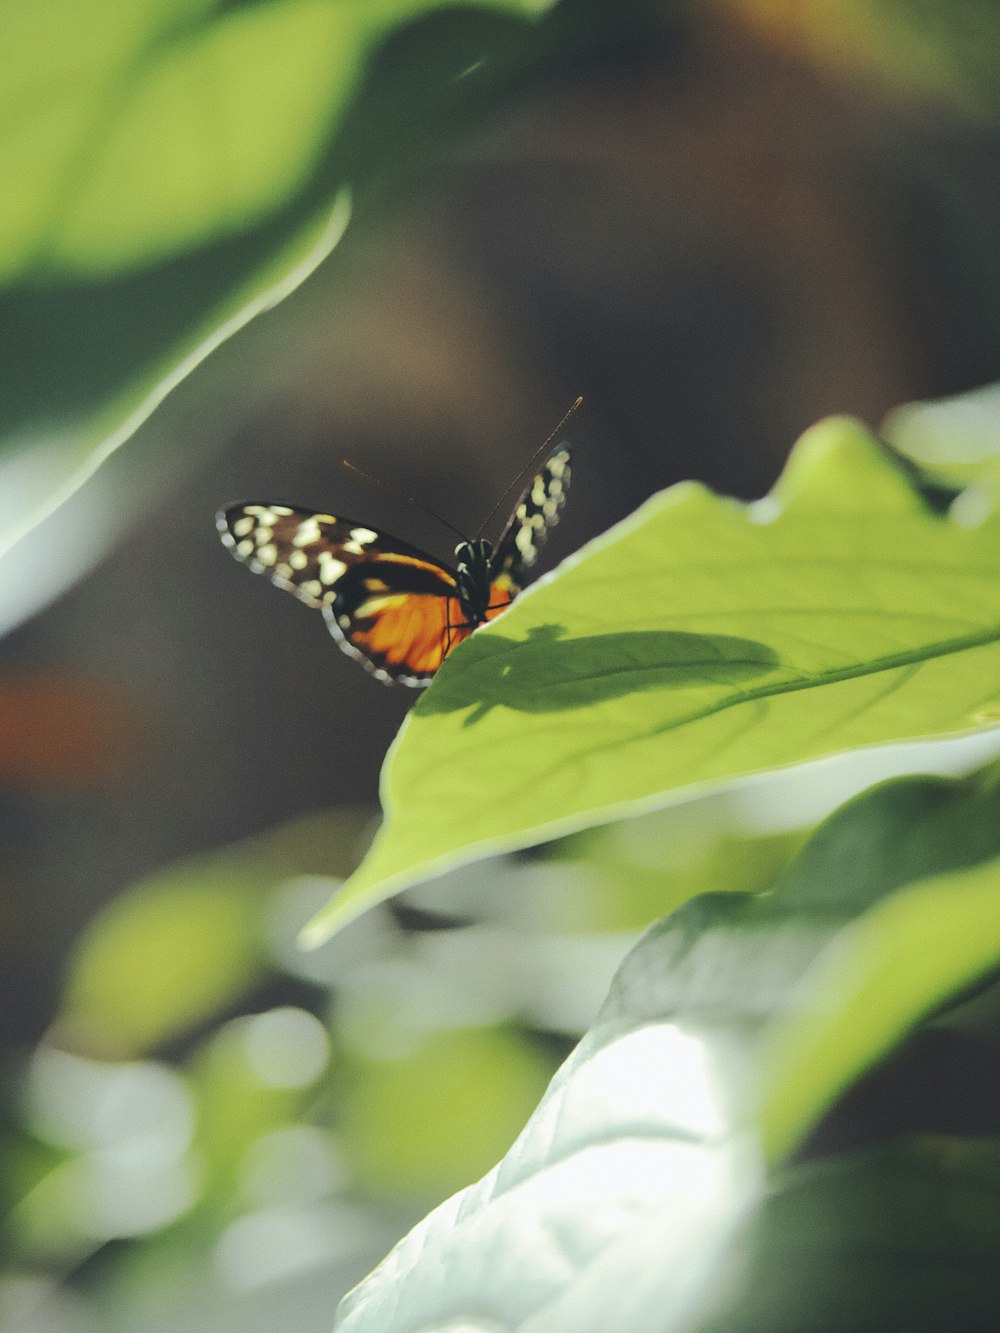 Mariposa monarca posada en hoja verde en fotografía de primer plano durante el día